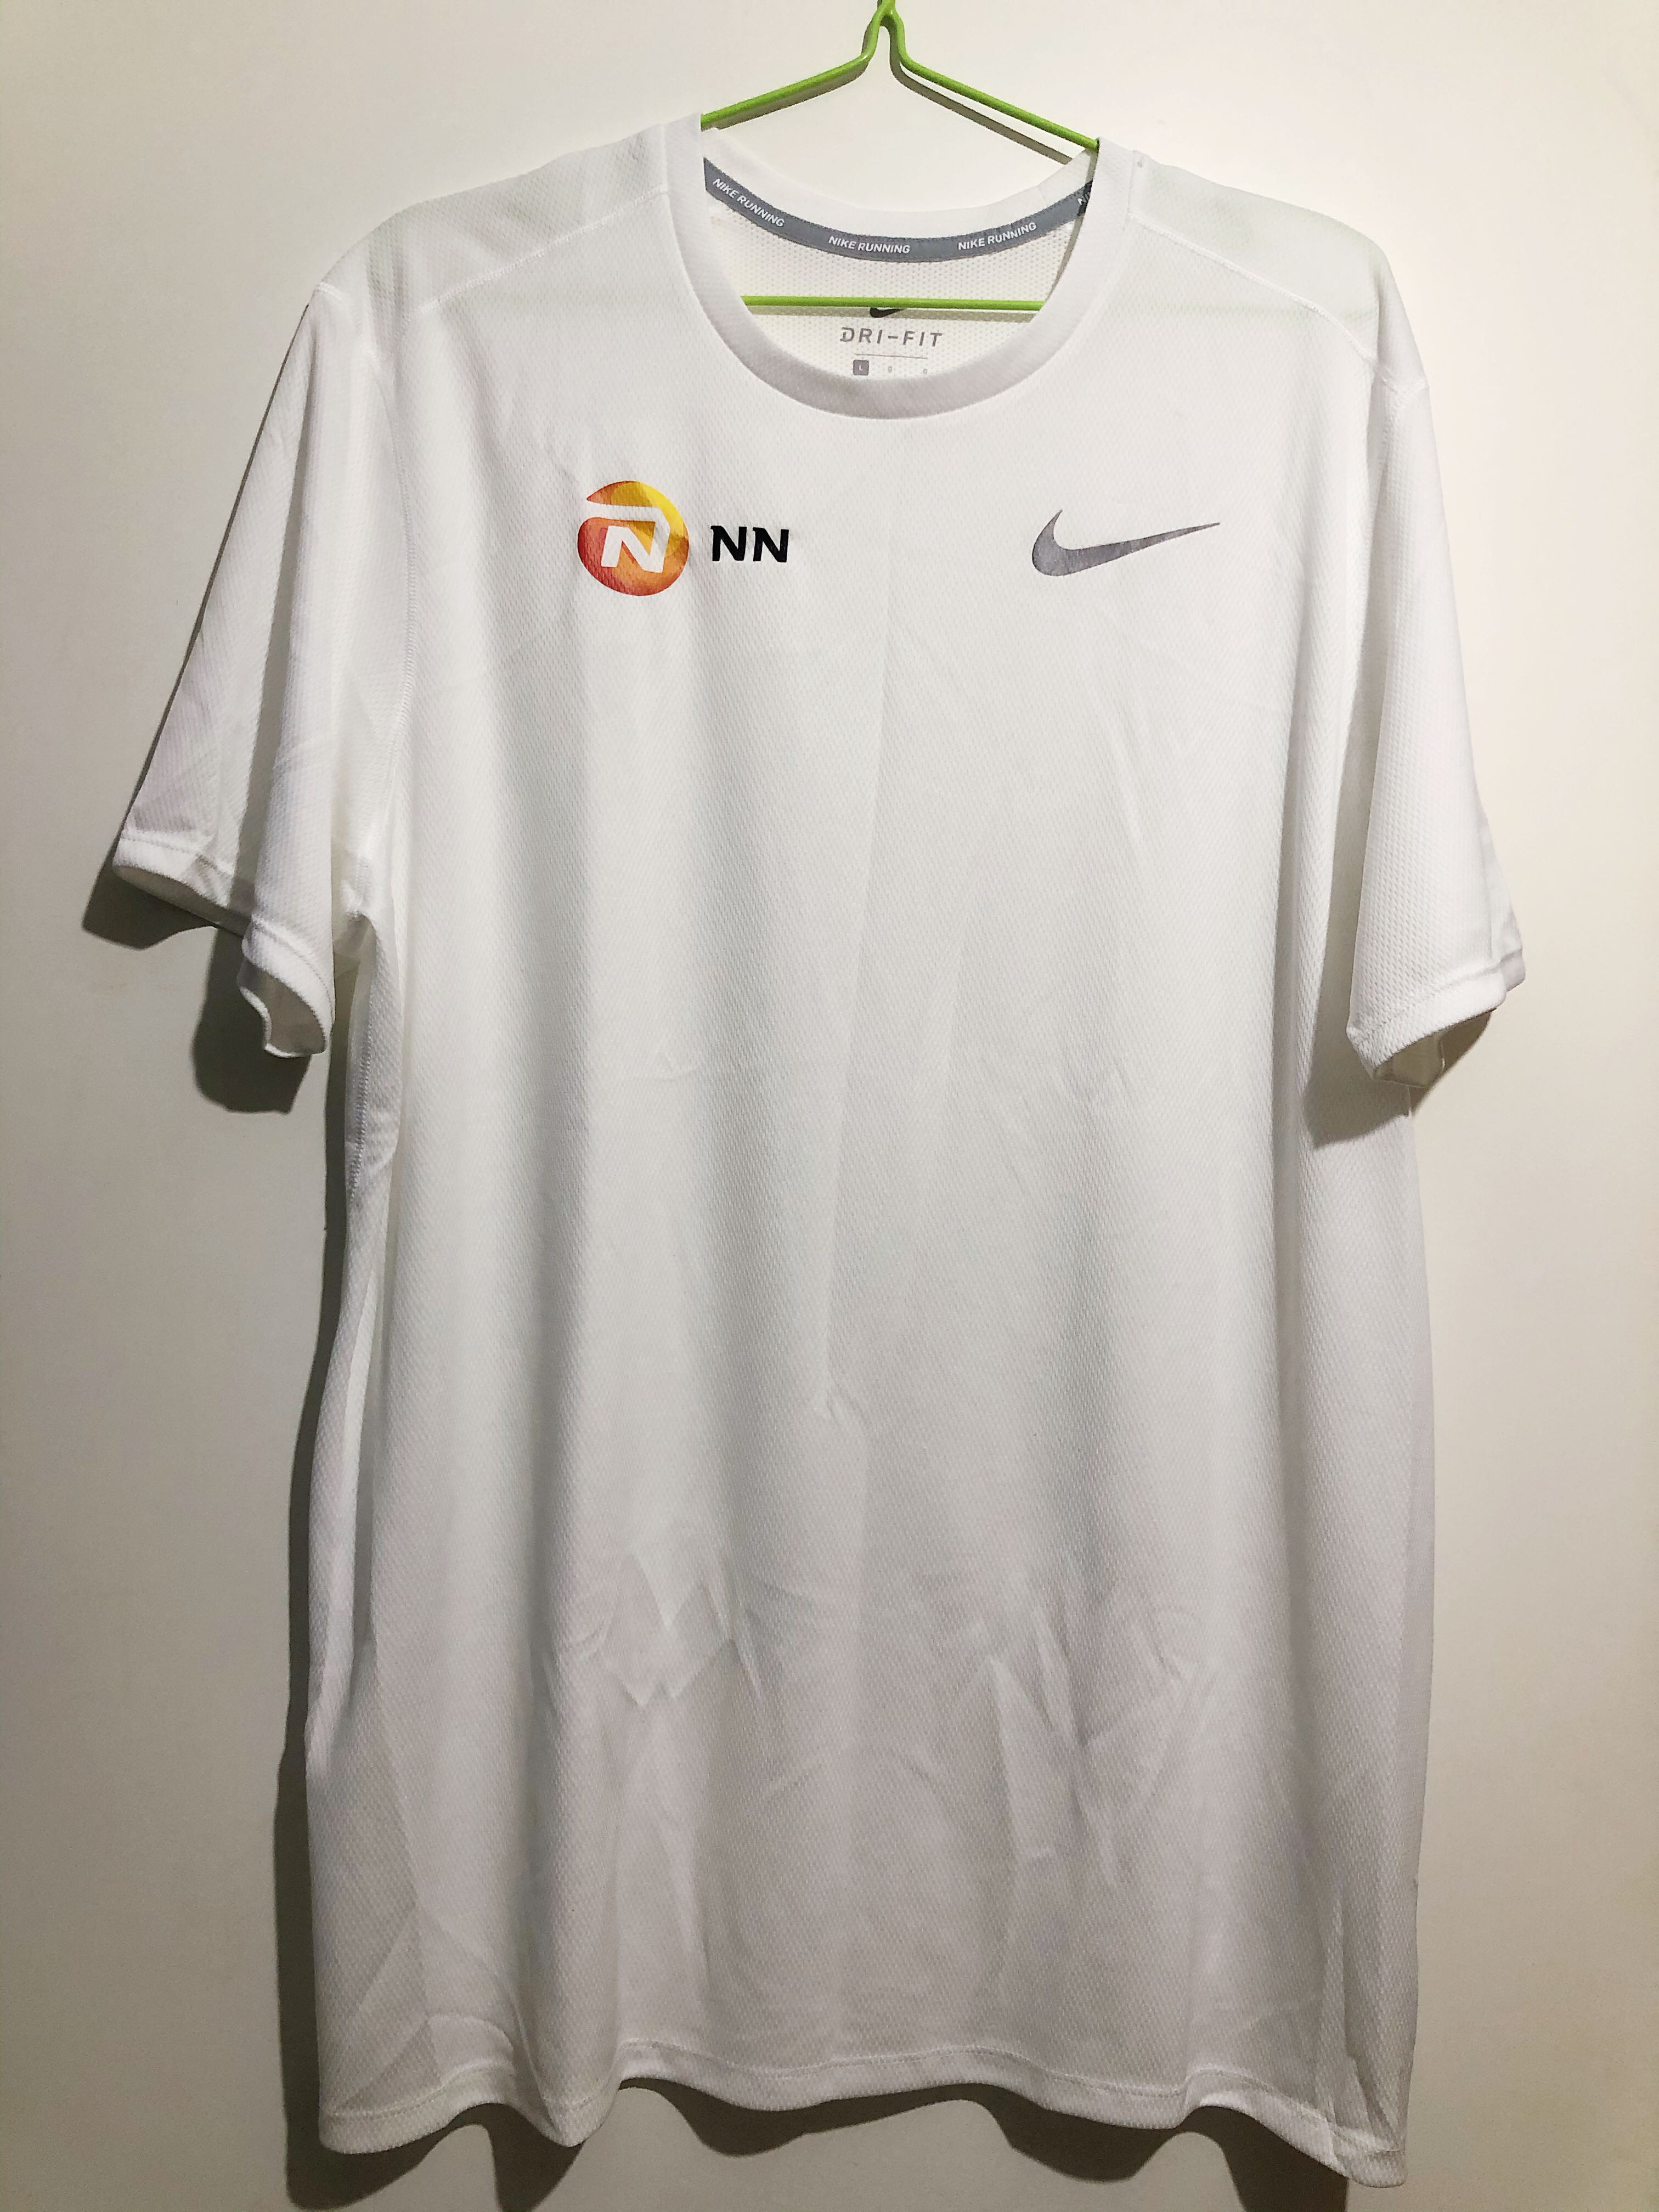 NN Running Team Elite T-Shirt (可議價 